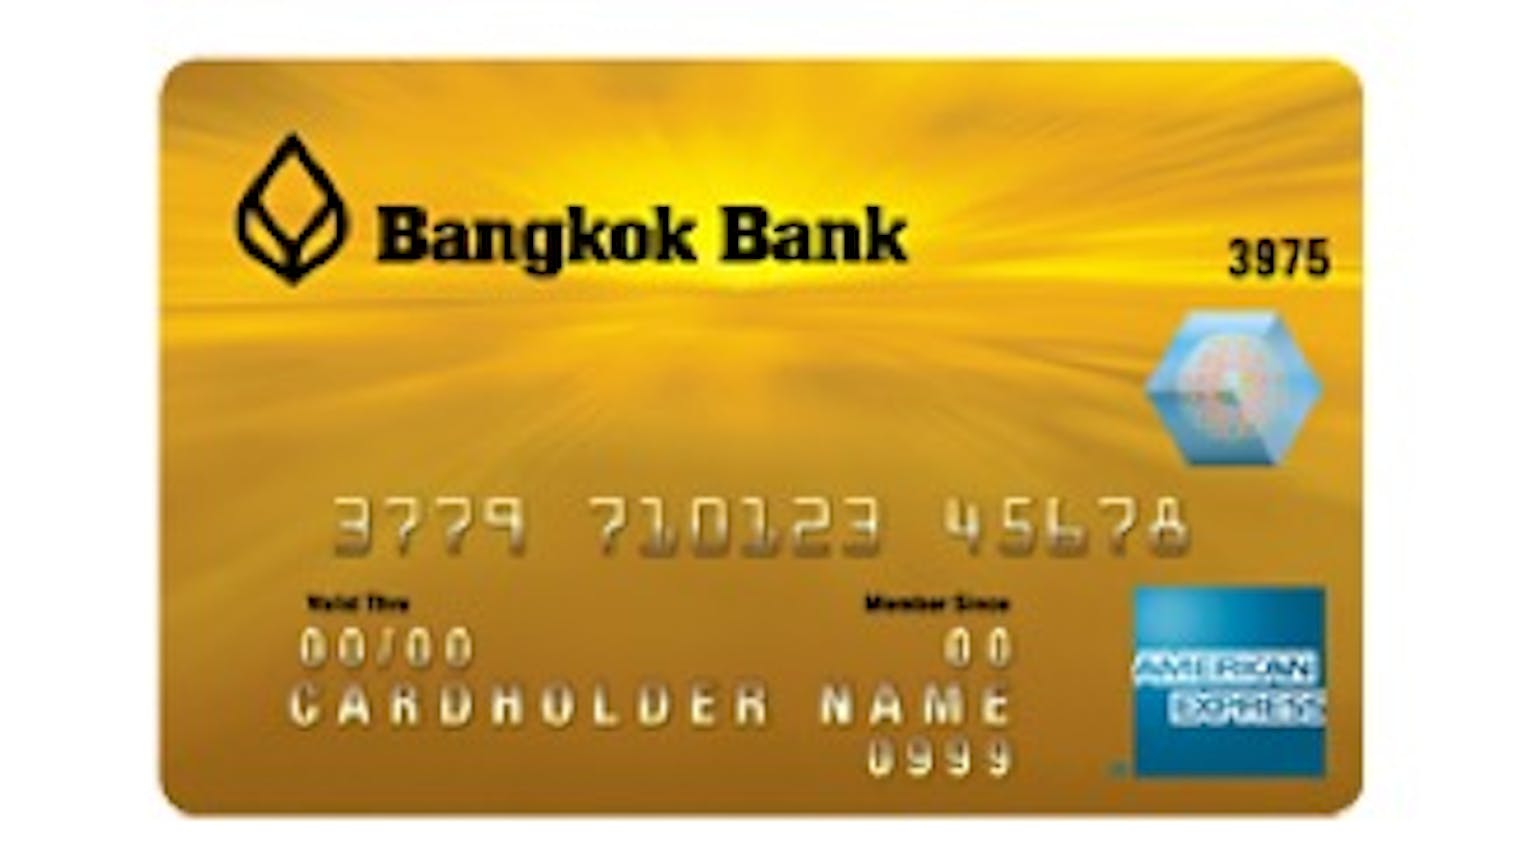 Карта бангкок банка. Bangkok Bank карта. Bangkok Bank Card. Банковская карта Бангкок банк. Банковская карта Американ экспресс.